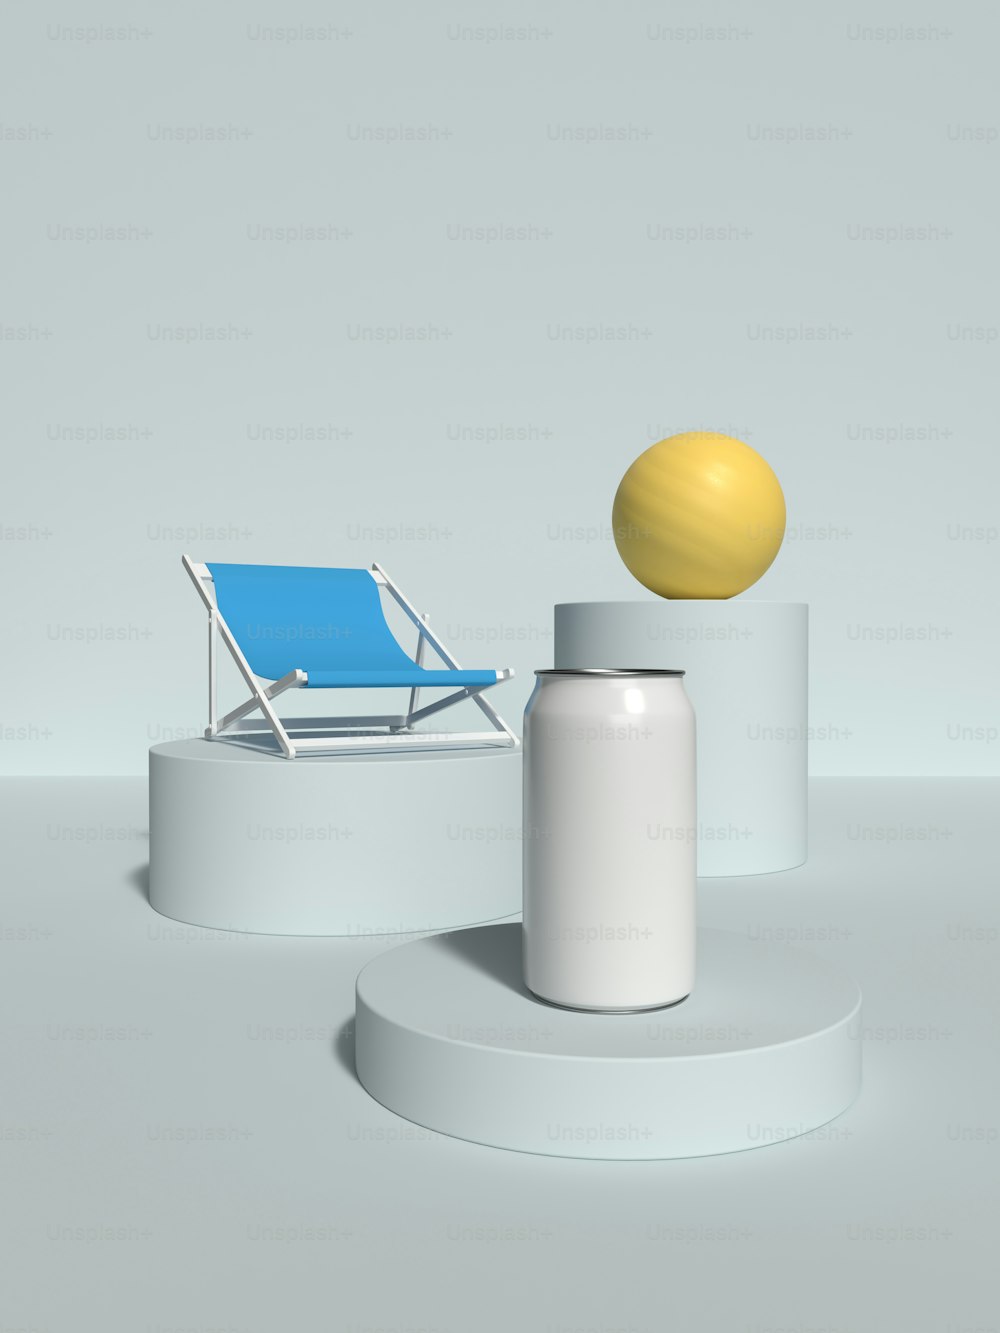 Una bola amarilla sentada encima de un soporte blanco